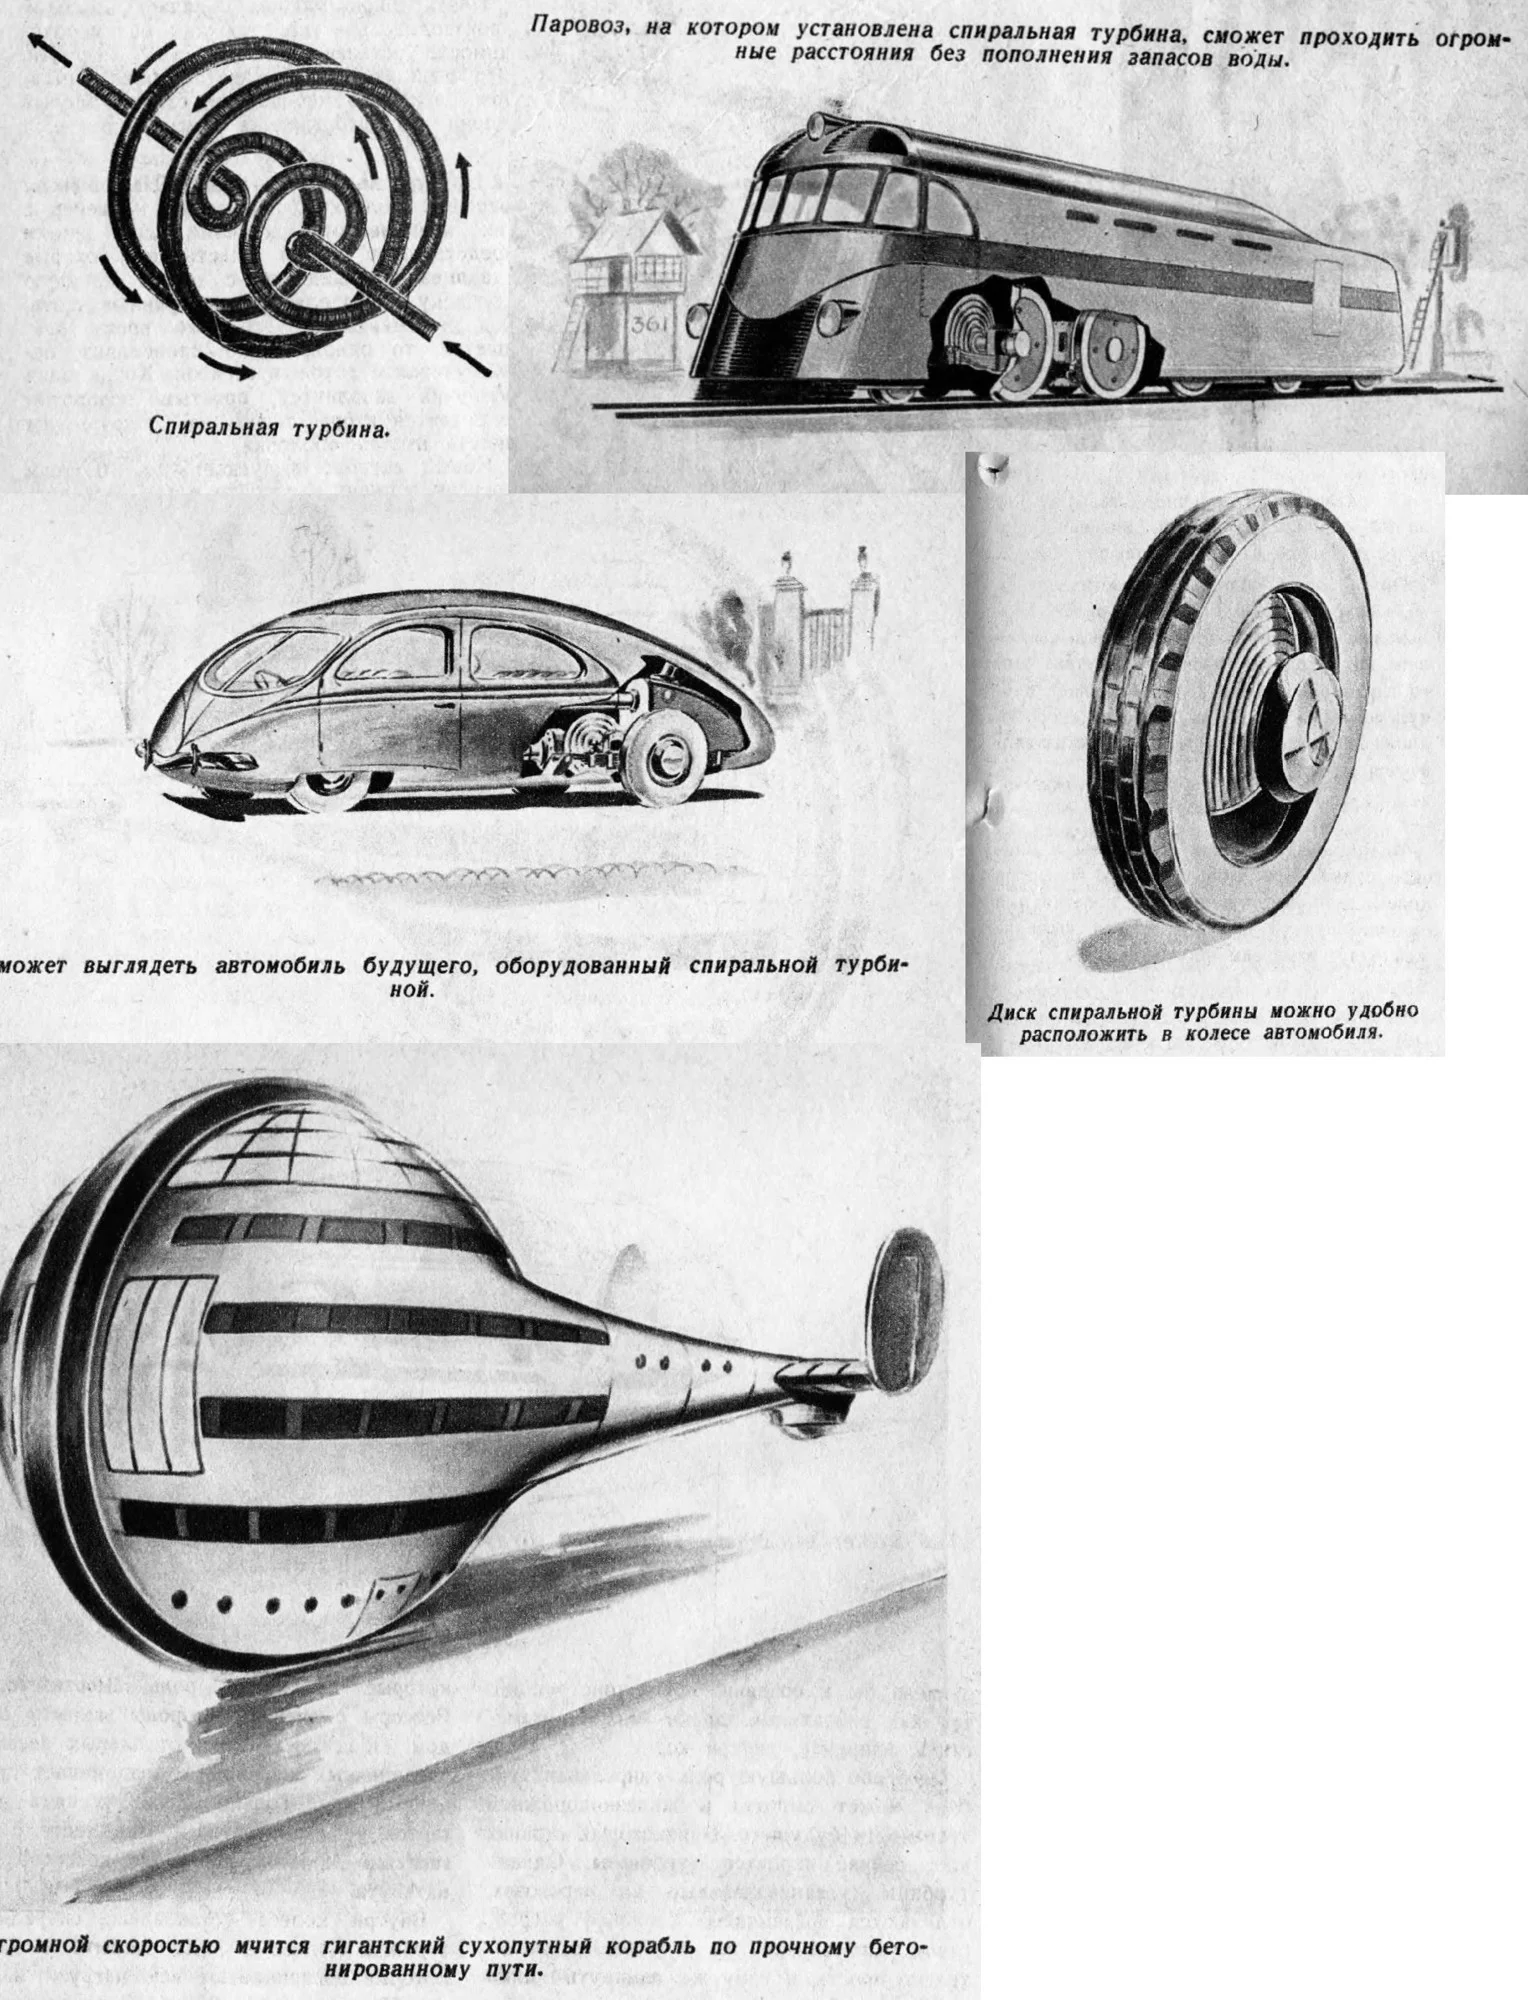 В 1939 году таки видели поезд, машину и корабль из будущего с применением улучшенного парового двигателя на спиральной турбине. 